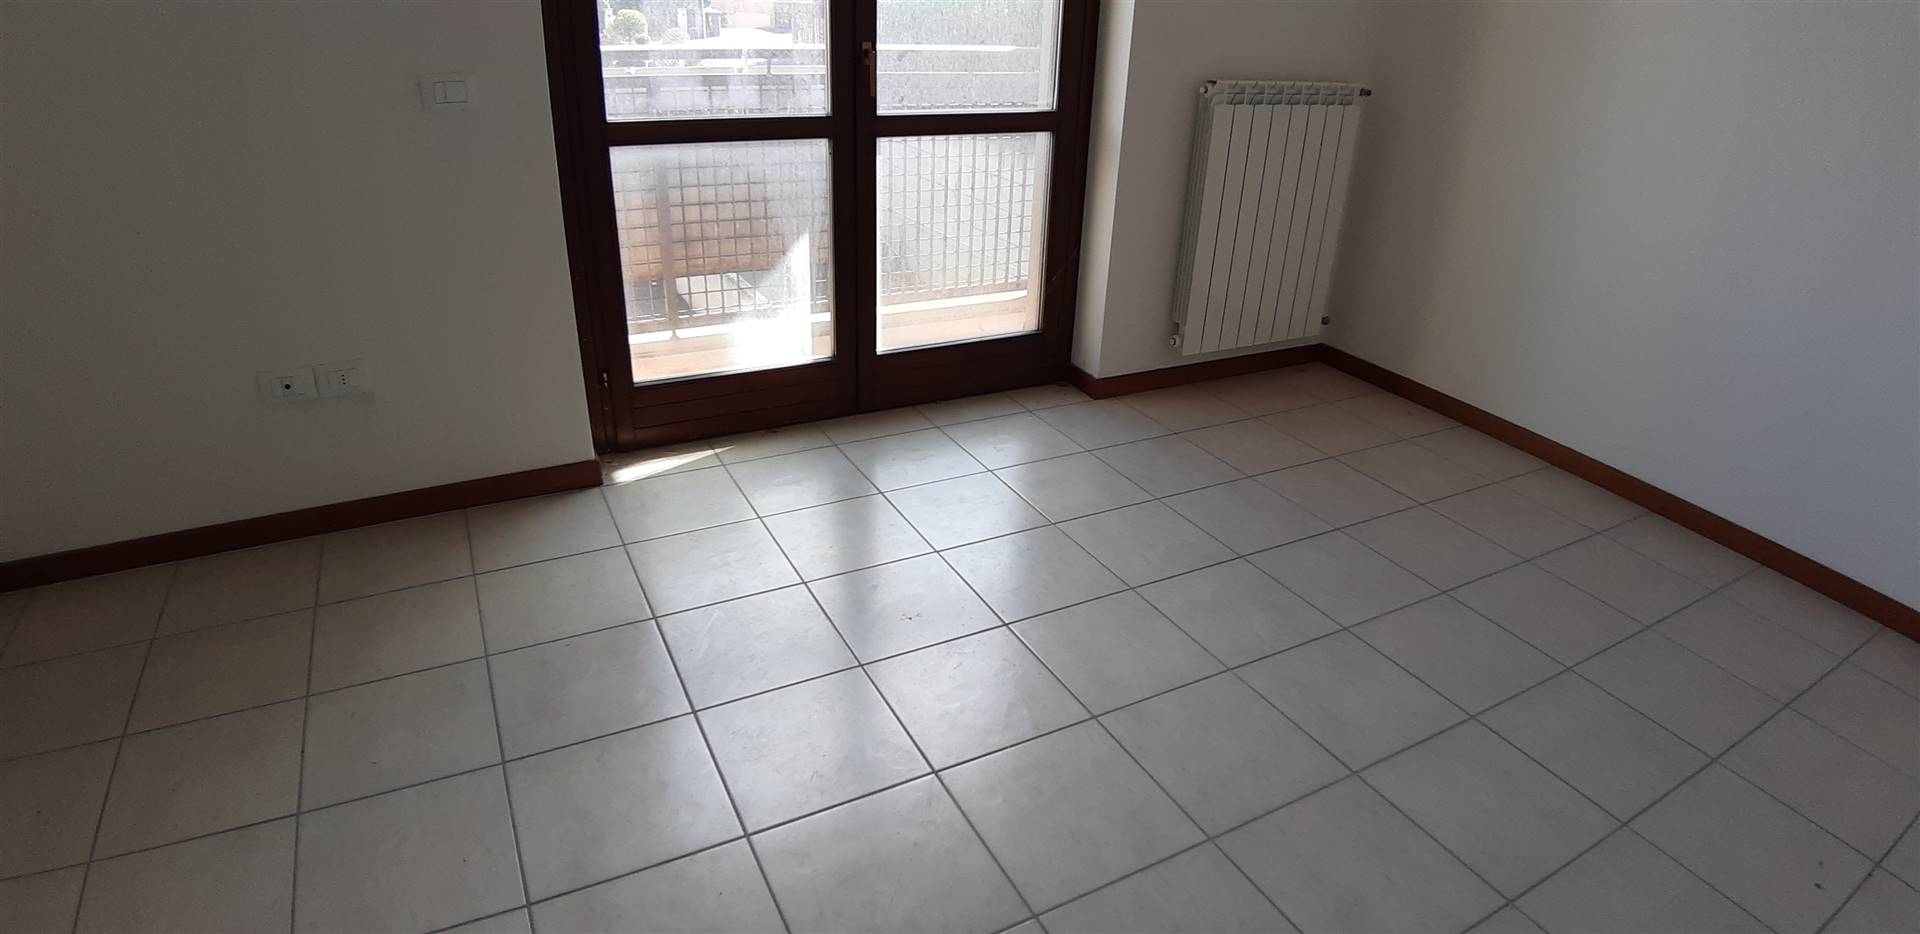 Appartamento in vendita a Chianciano Terme, 2 locali, prezzo € 74.000 | PortaleAgenzieImmobiliari.it